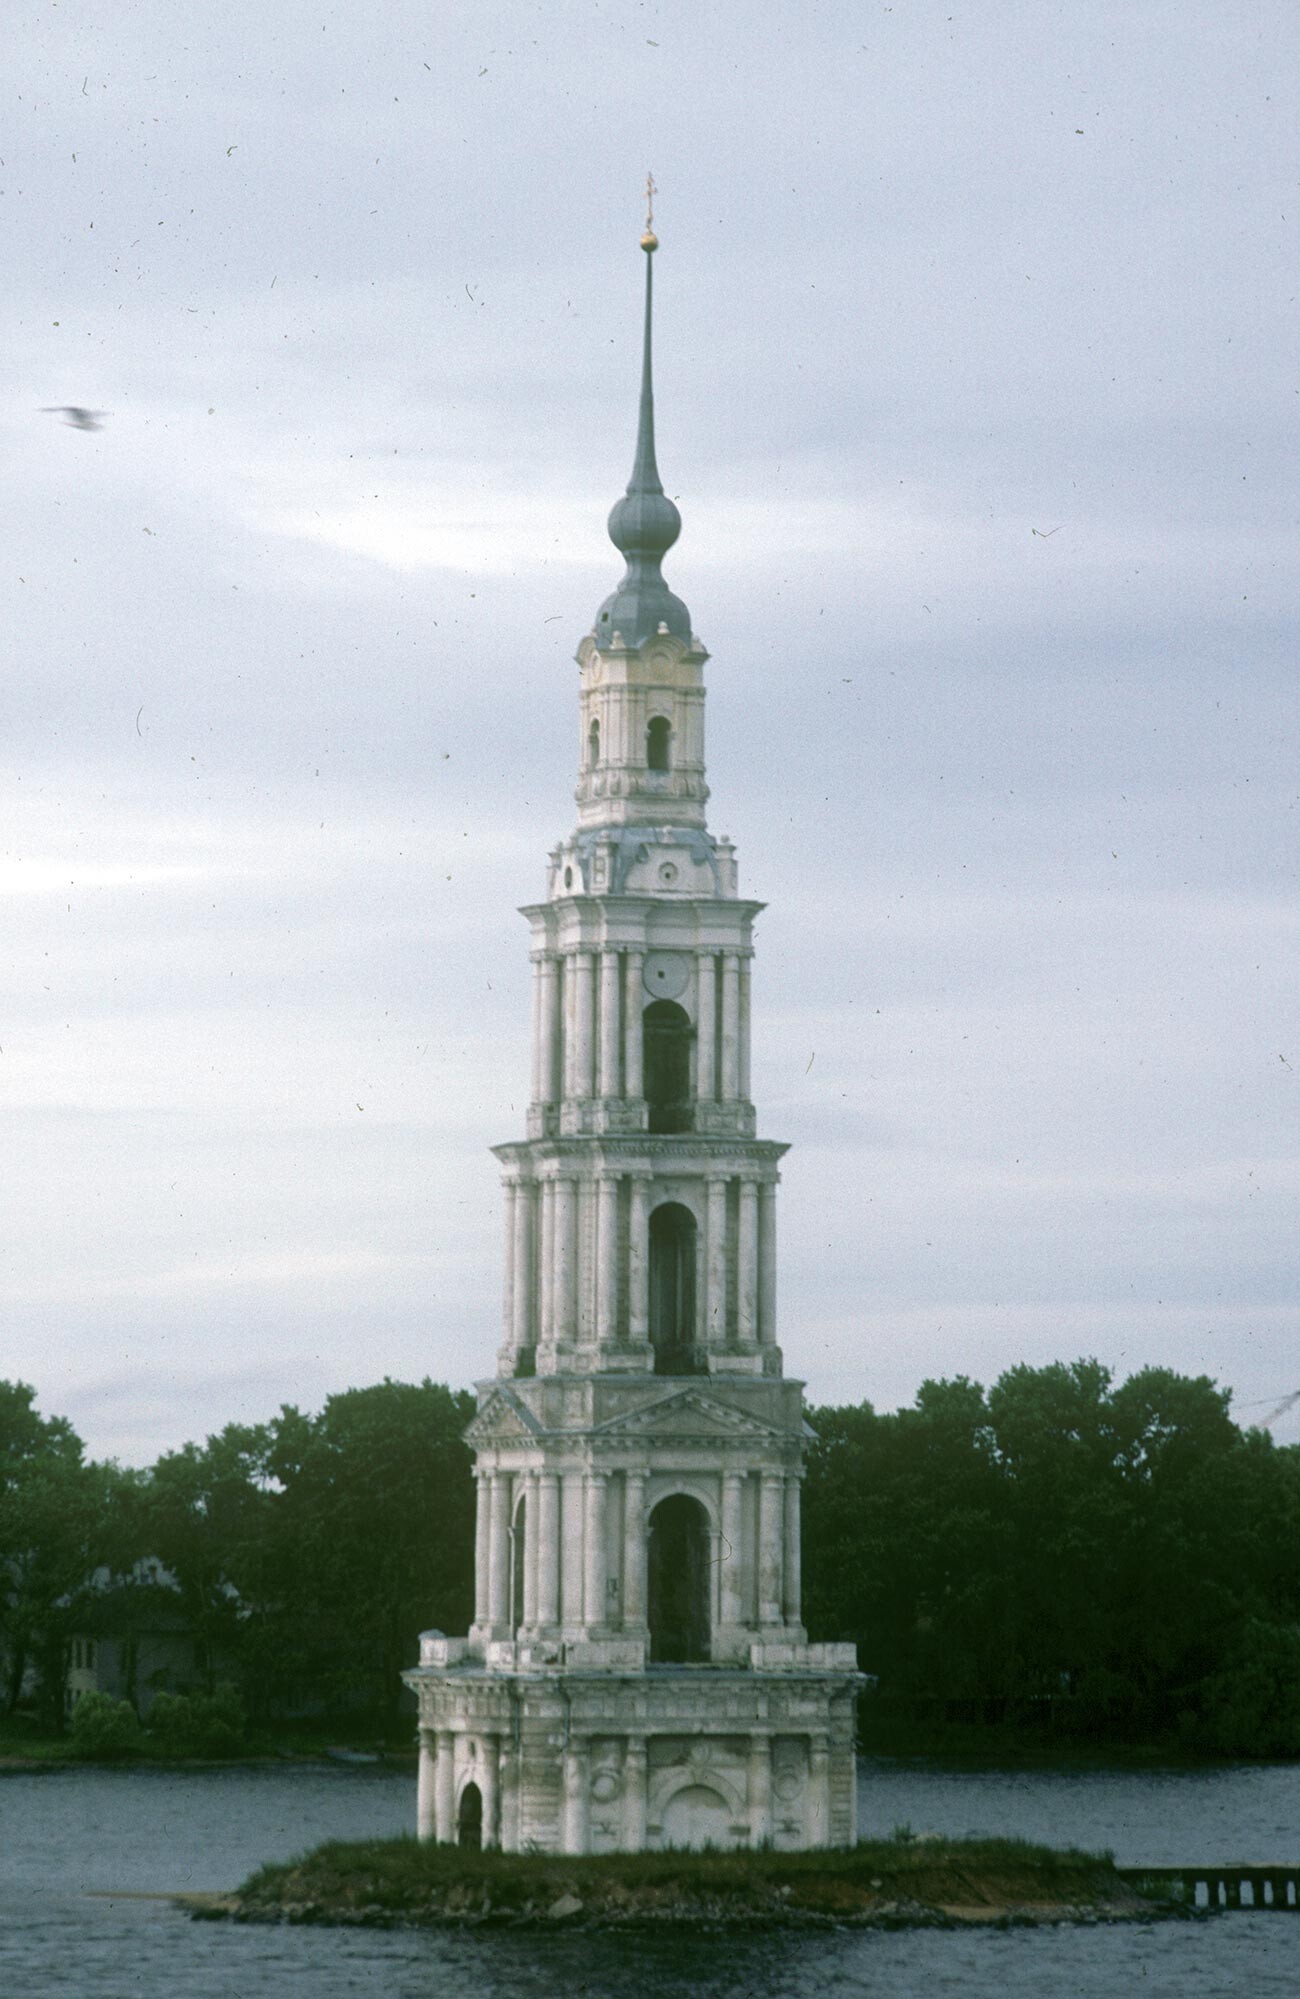 Kaliazine. Clocher de la cathédrale Saint-Nicolas. La cathédrale a été démolie lors de la création du réservoir d’Ouglich (partie de la Volga), mais le clocher est resté en tant que phare. Photo prise le 9 août 1991